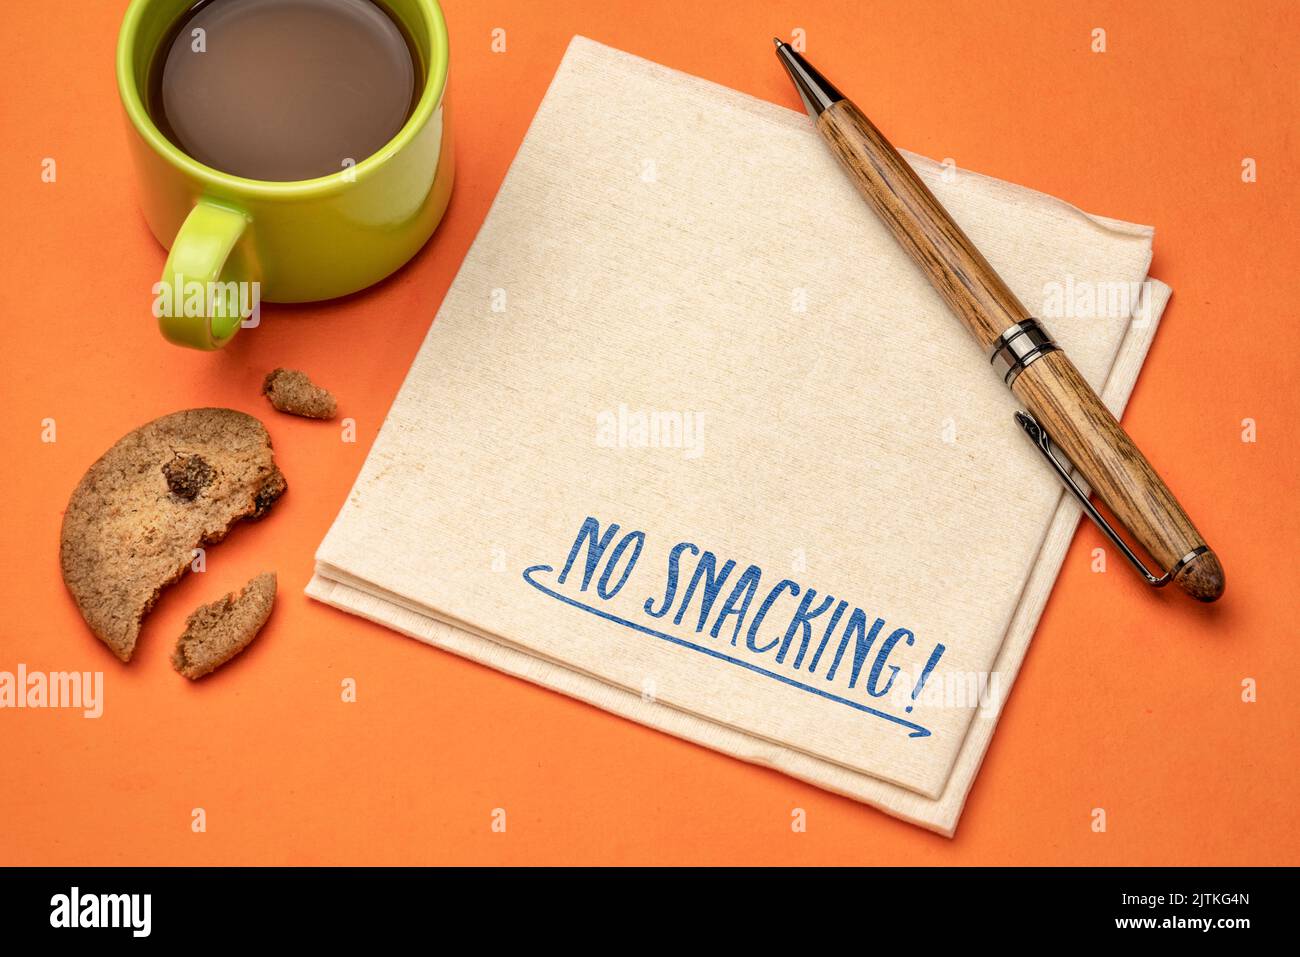 Kein Naschen! Inspirierende Erinnerungsnotiz auf einer Serviette mit Kaffee und Keksen. Gesunde Lebensweise und Ernährung Konzept. Stockfoto